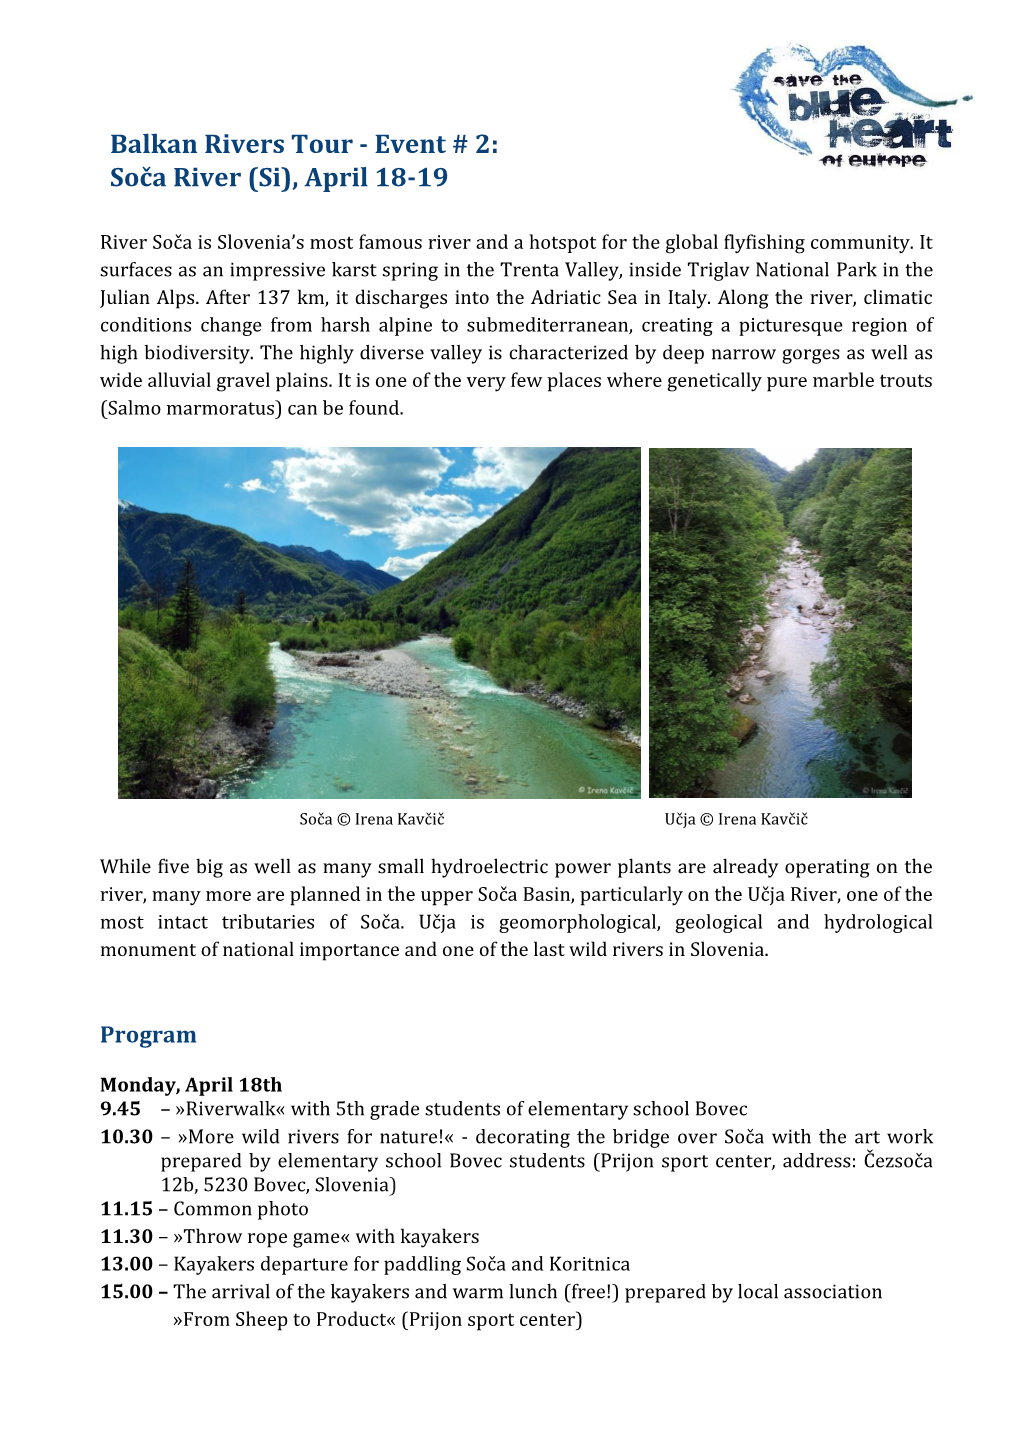 Balkan Rivers Tour - Event # 2: Soča River (Si), April 18-19